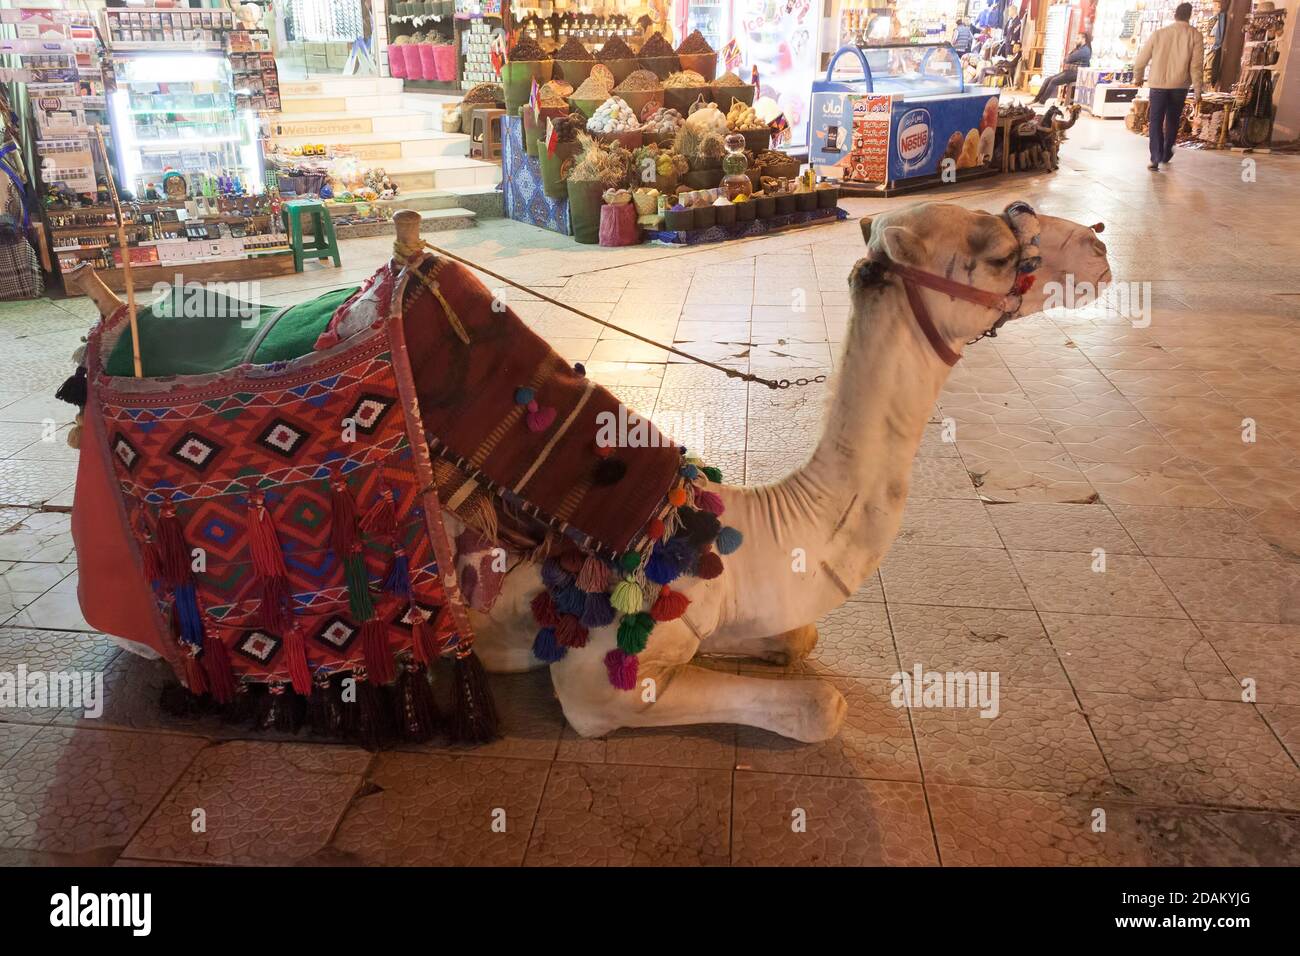 CHARM EL SHEIKH, EGYPTE - FÉVRIER 2018 : chameau dans le vieux marché Charm El Sheikh. Équitation à dos de chameau - attire encore beaucoup de touristes Banque D'Images